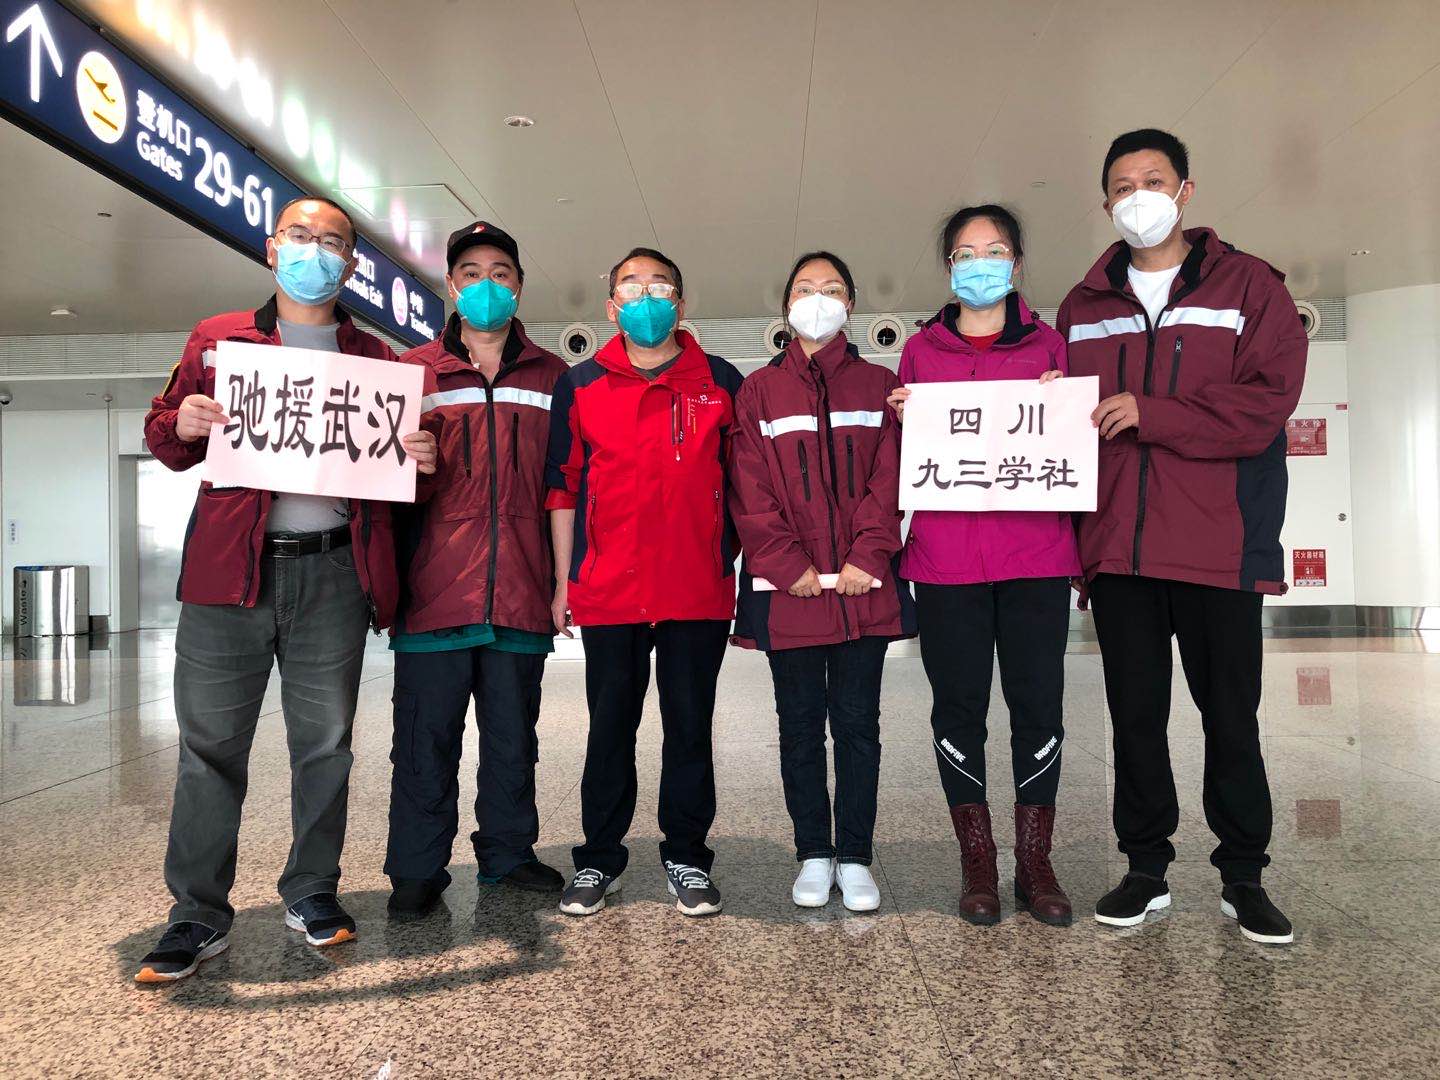 2020年3月21日朱伦刚和四川九三社员在武汉机场.jpg